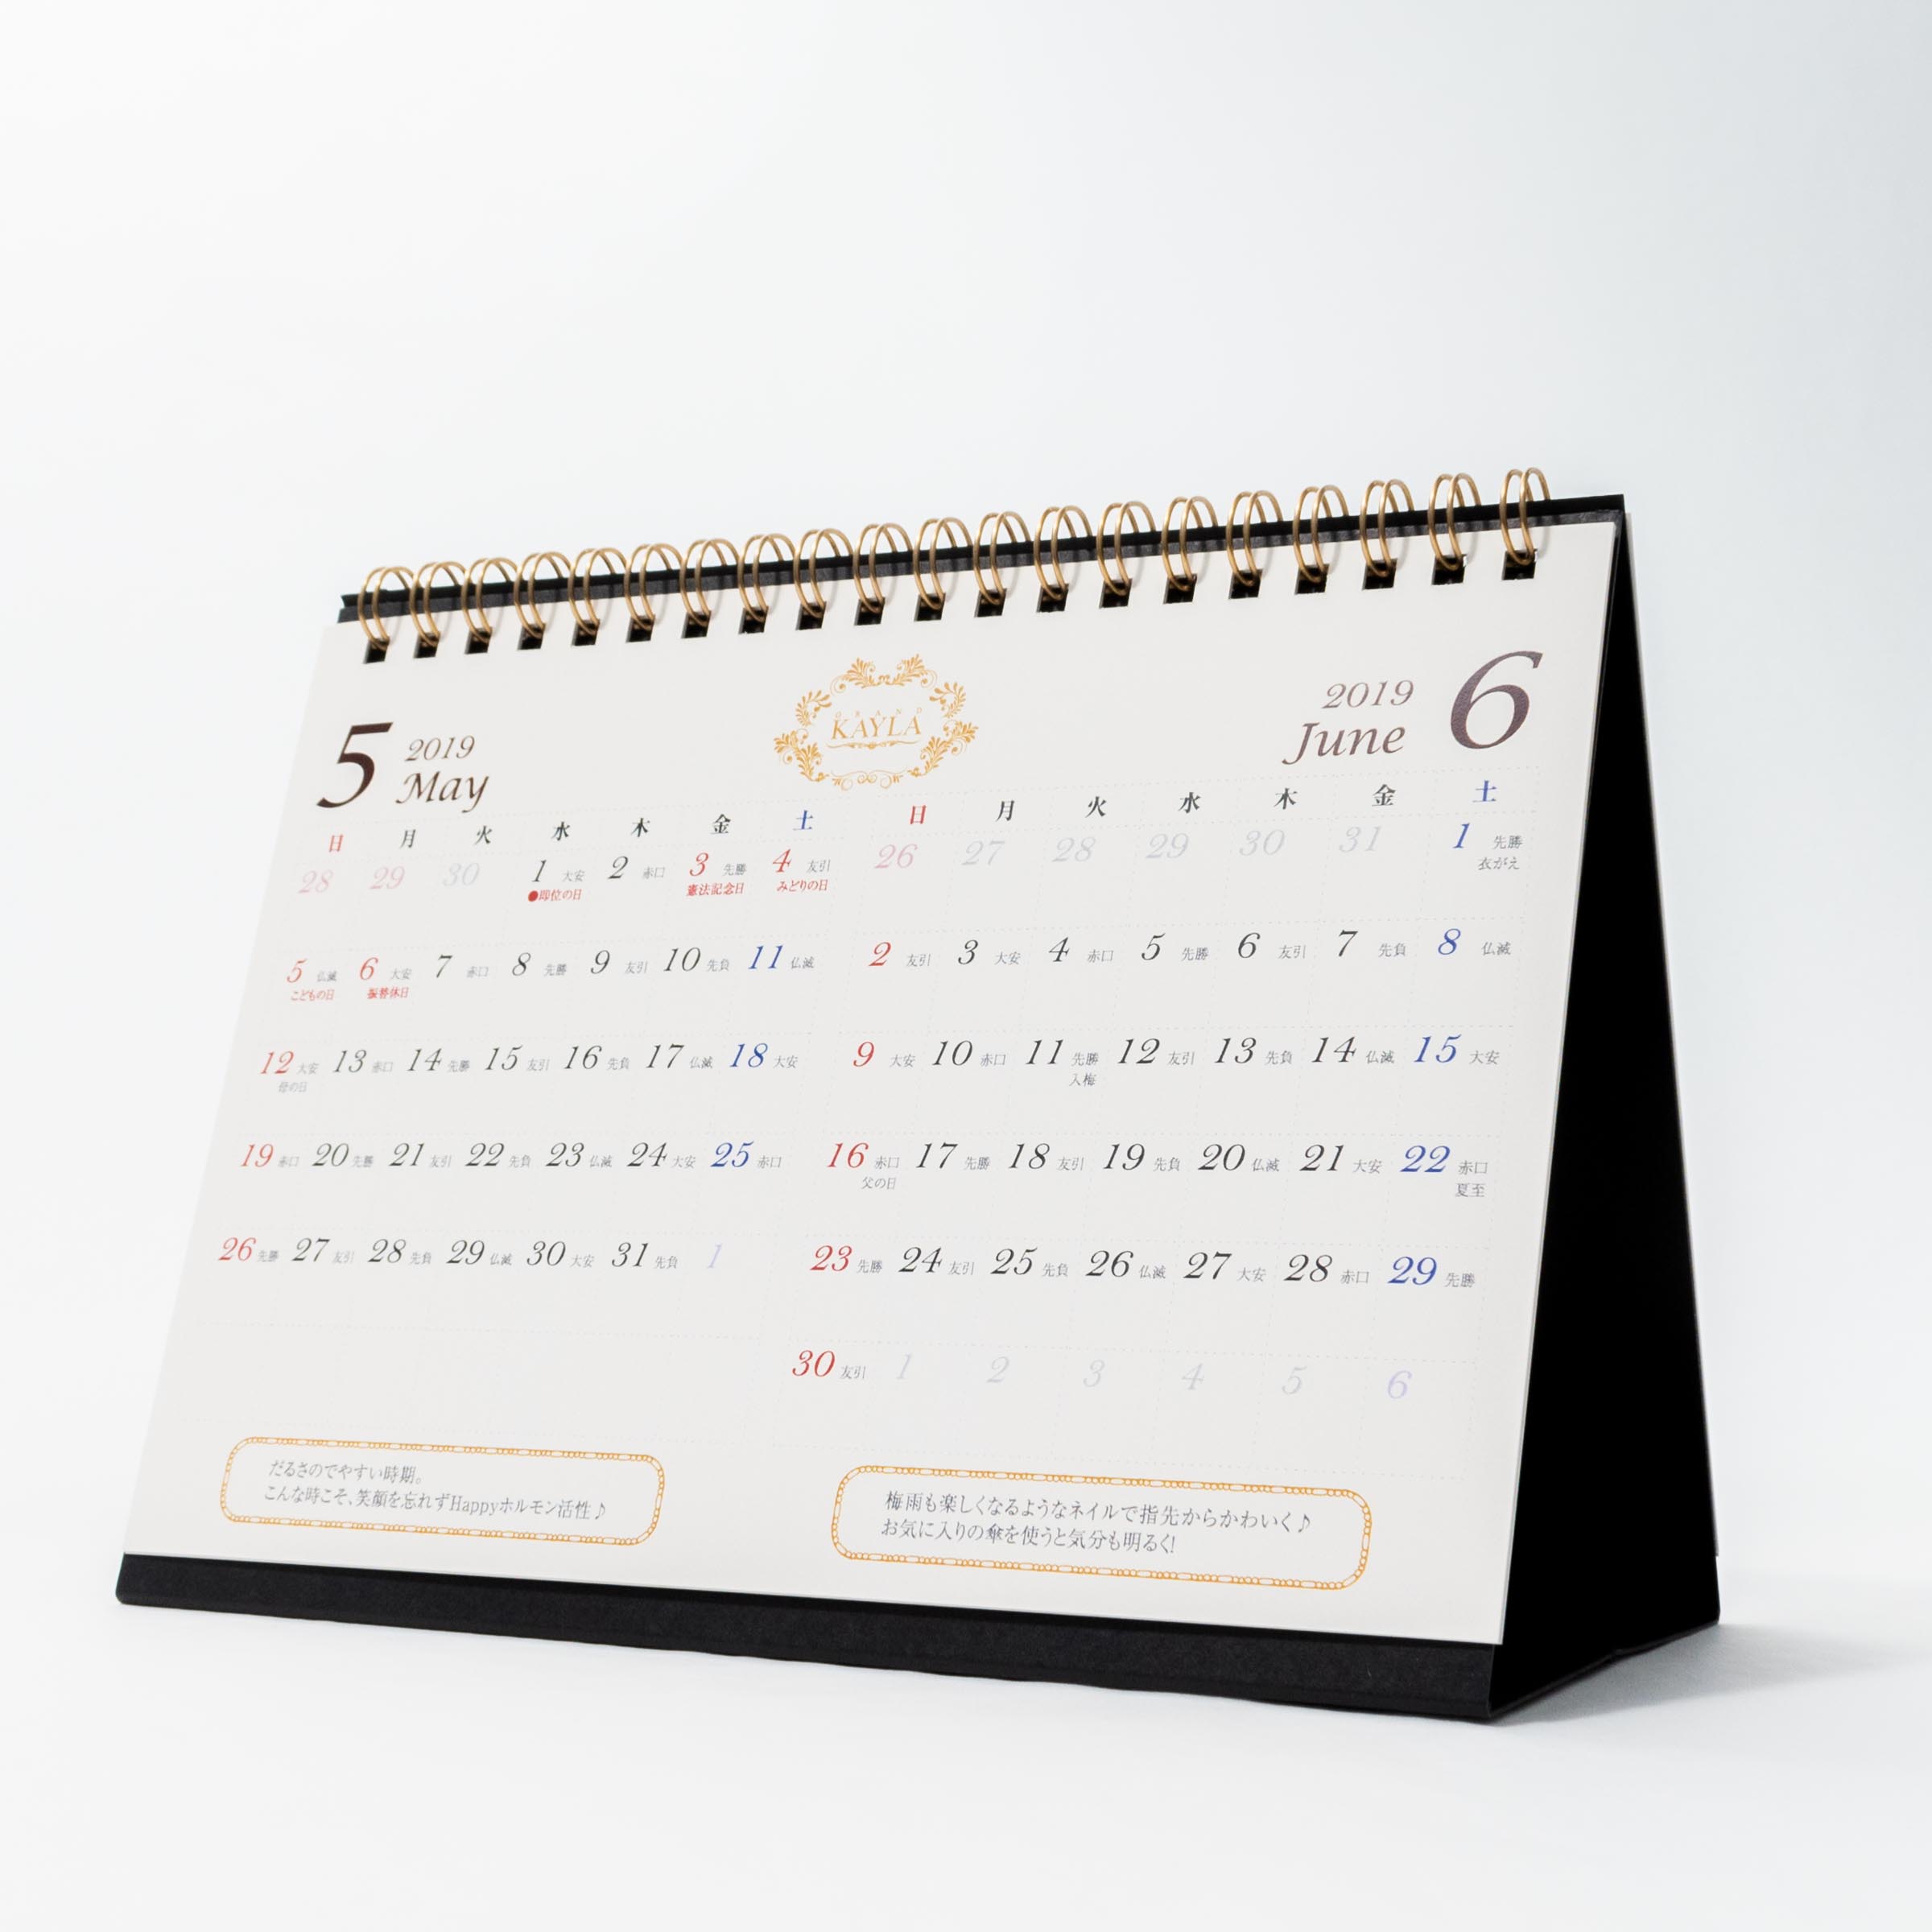 「株式会社サラシア 様」製作のオリジナルカレンダー ギャラリー写真3